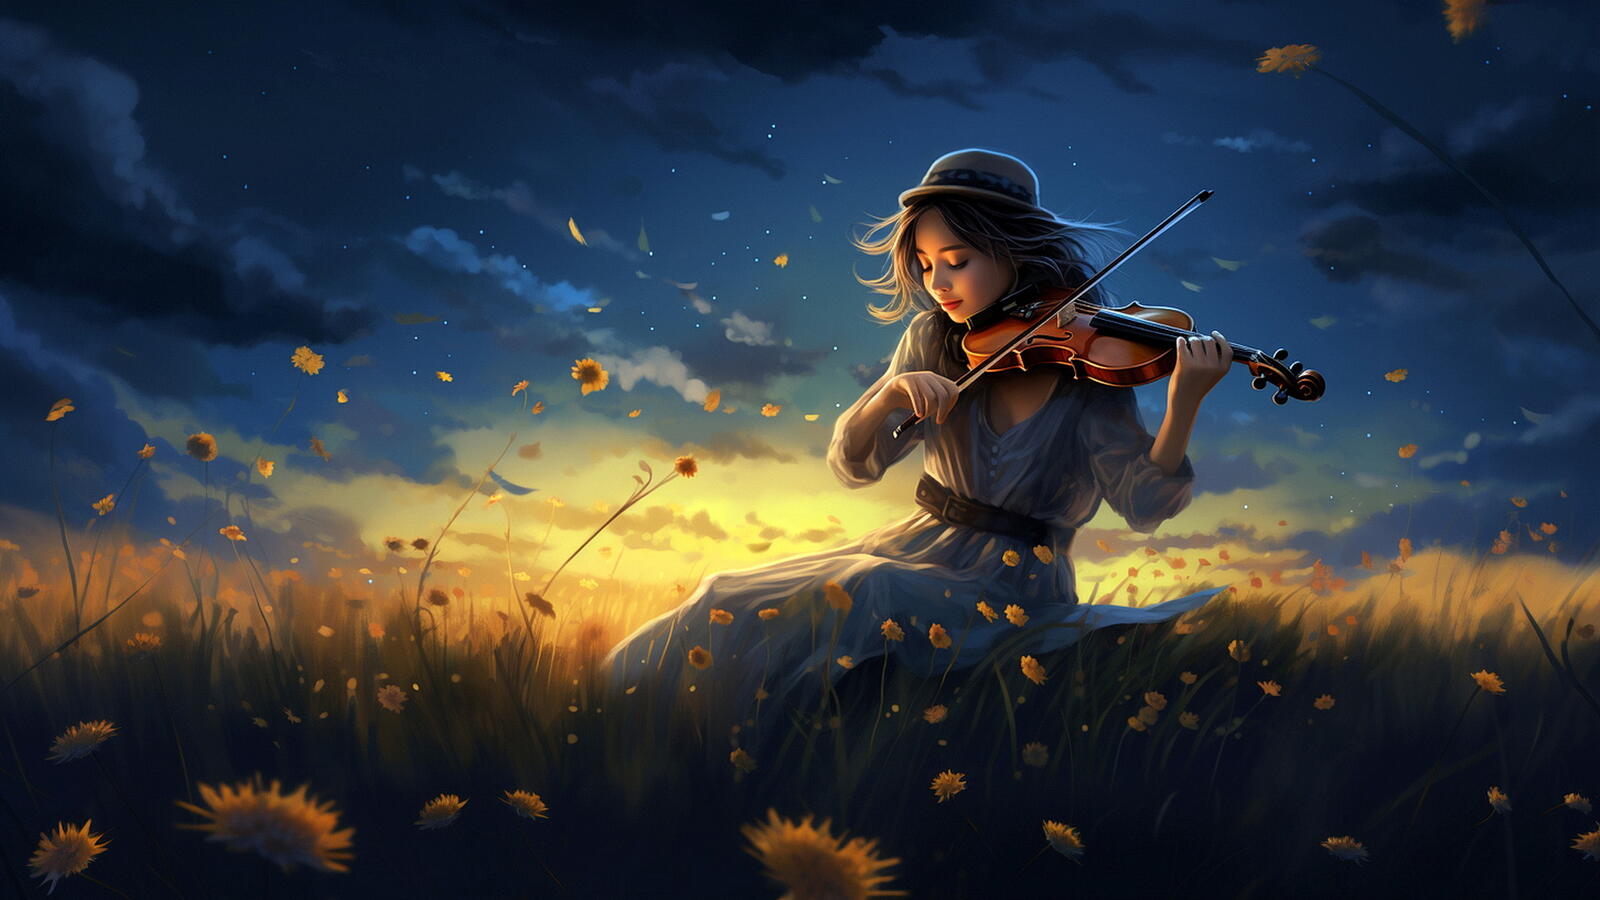 Бесплатное фото Девушка играет на скрипке  в поле